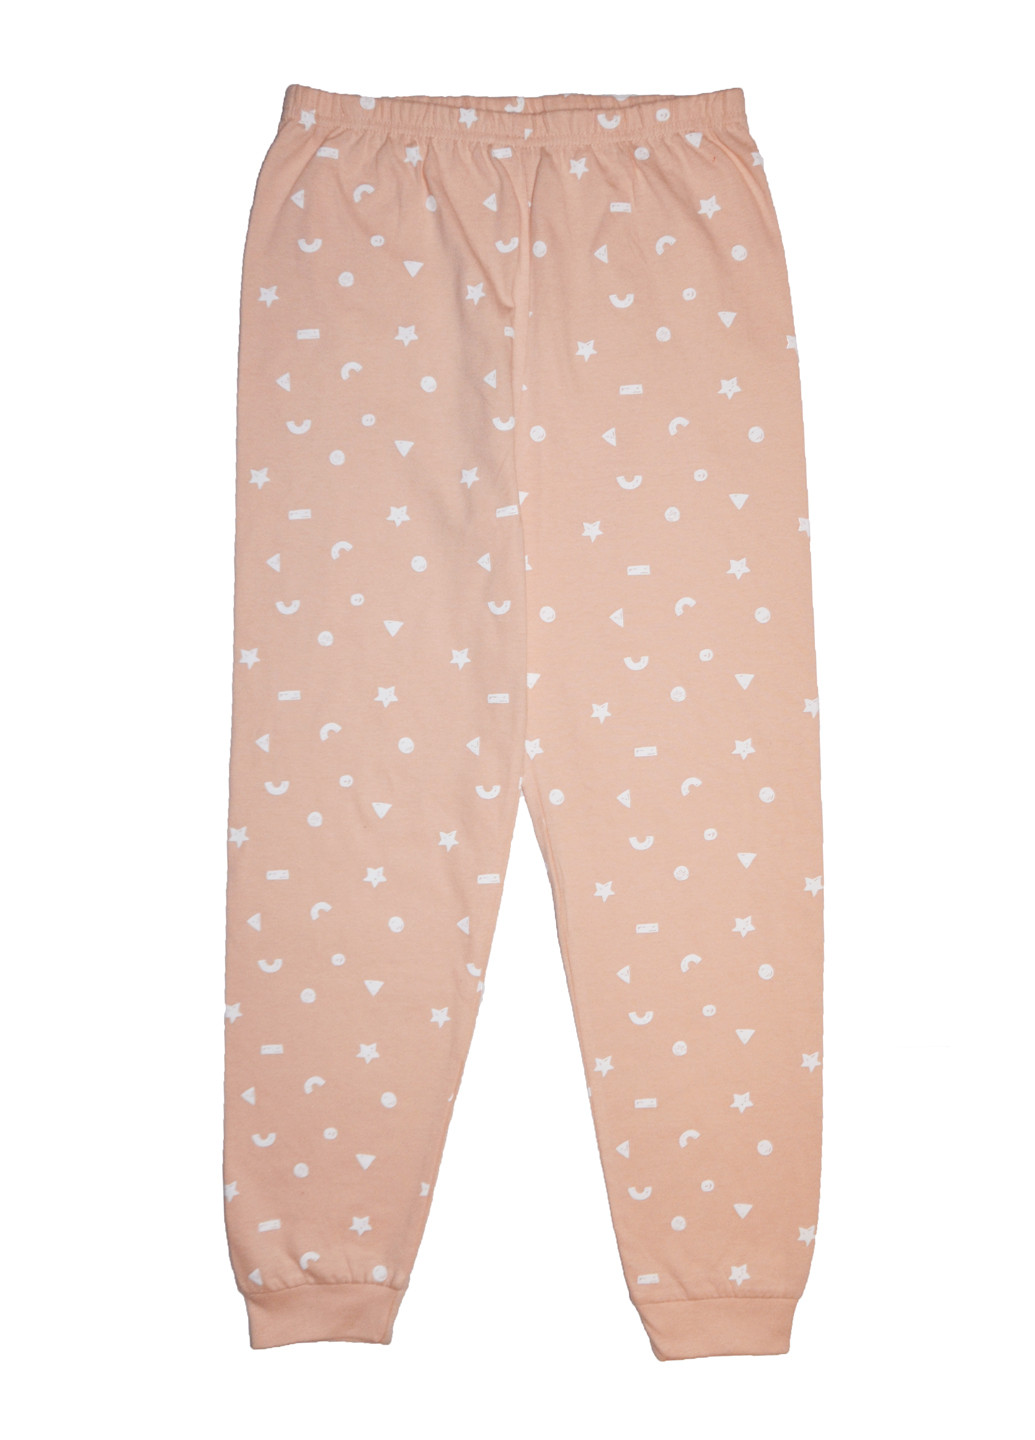 Персиковые домашние демисезонные брюки Primark